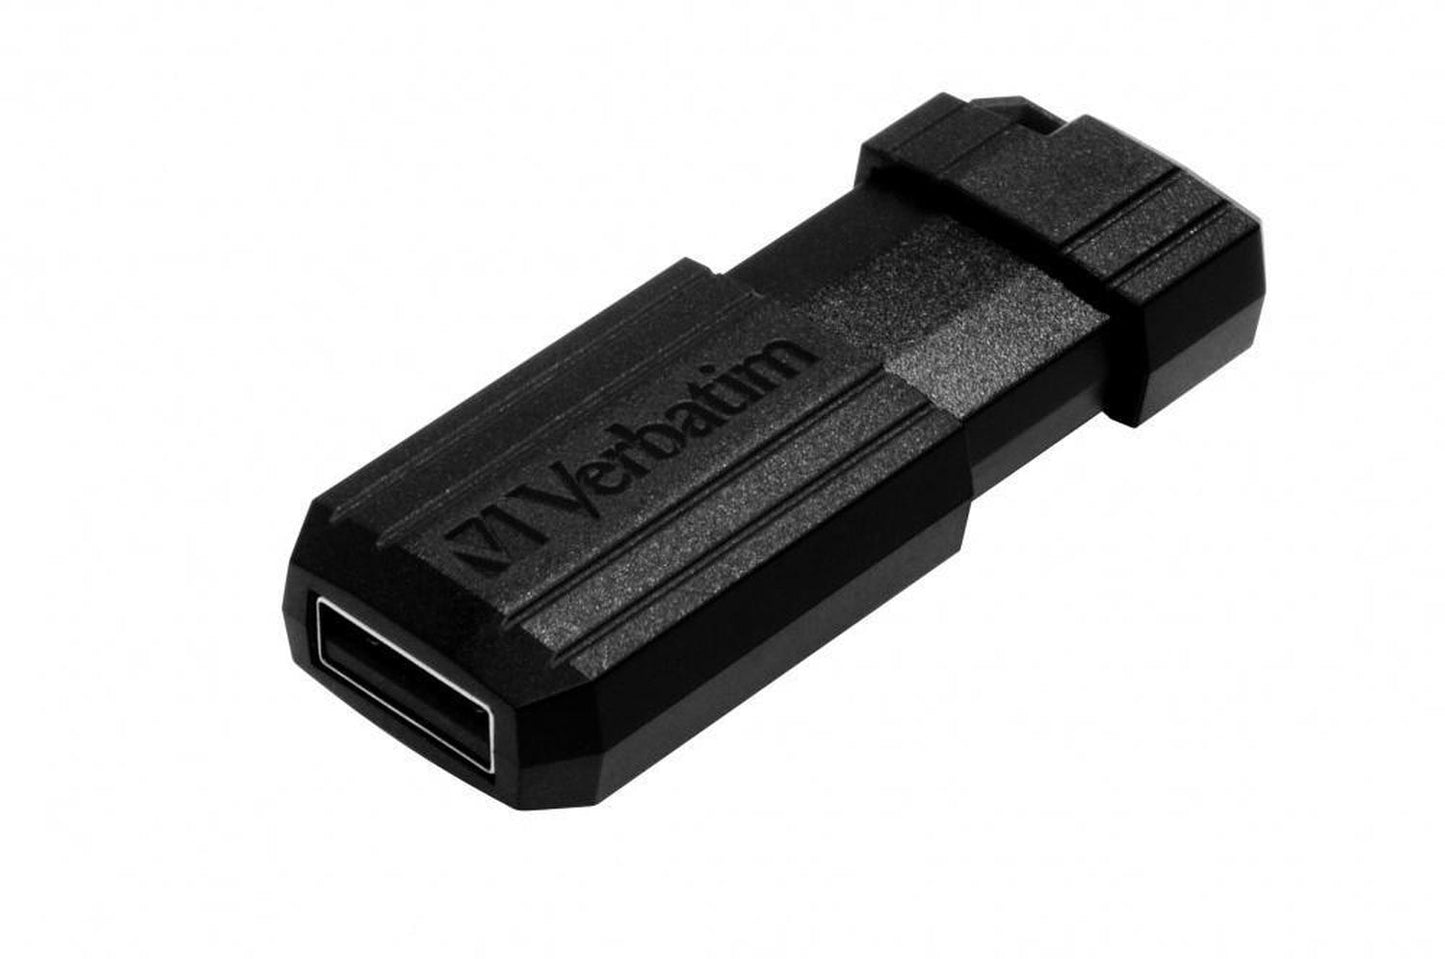 Memoria USB Verbatim PinStripe, 16GB, USB 2.0, Negro